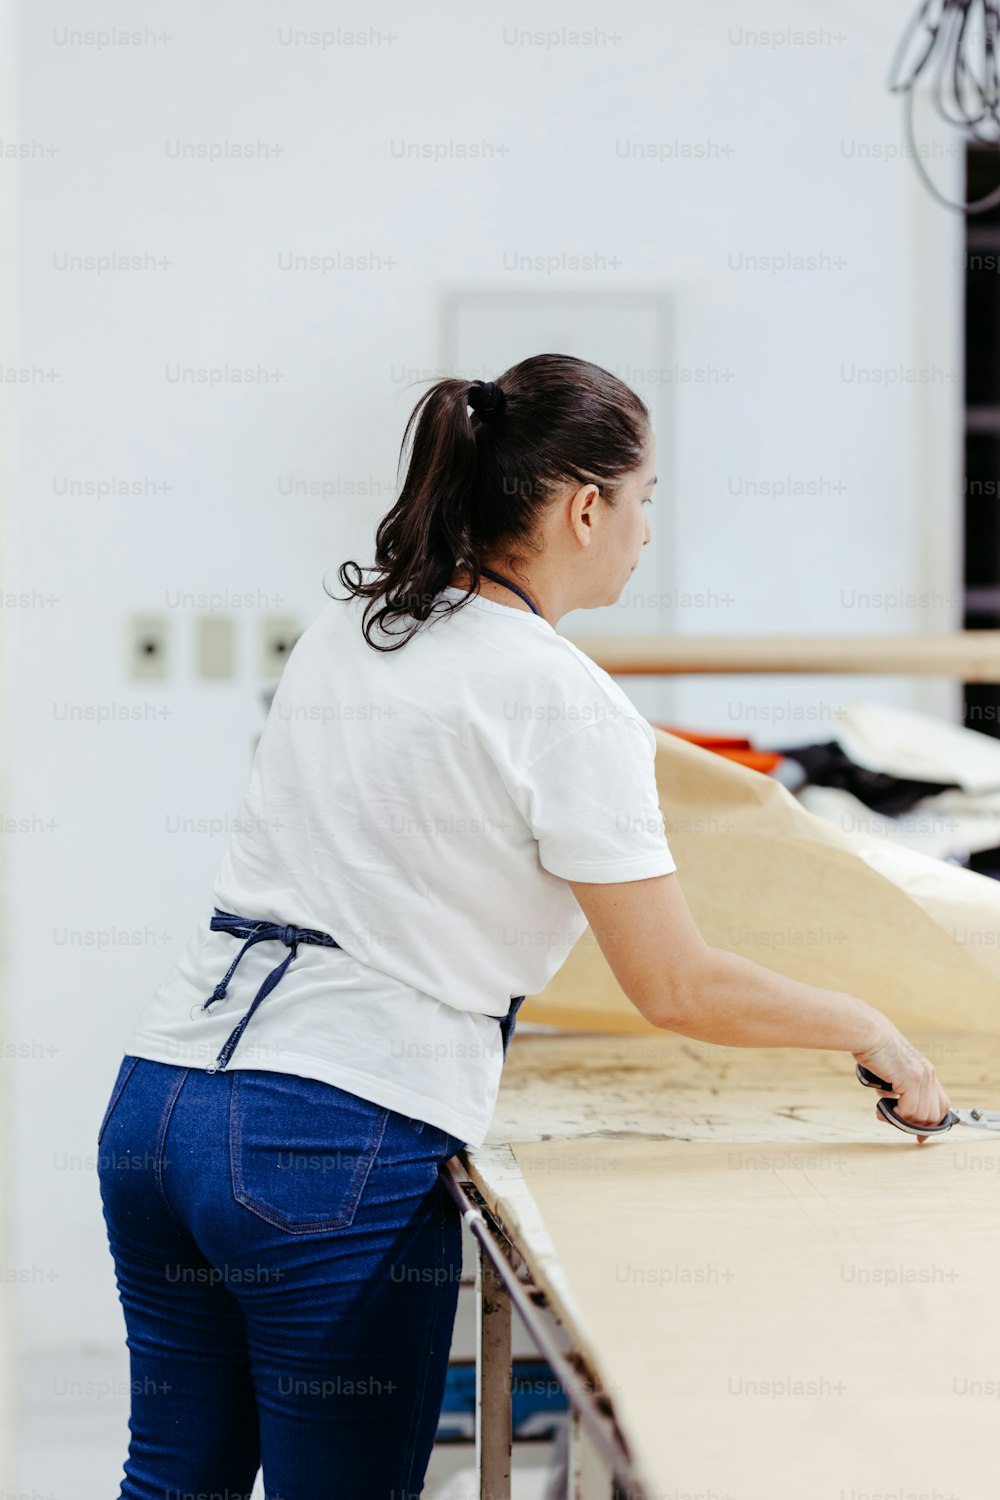 흰 셔츠와 청바지를 입은 여자가 나무 조각을 작업하고 있다